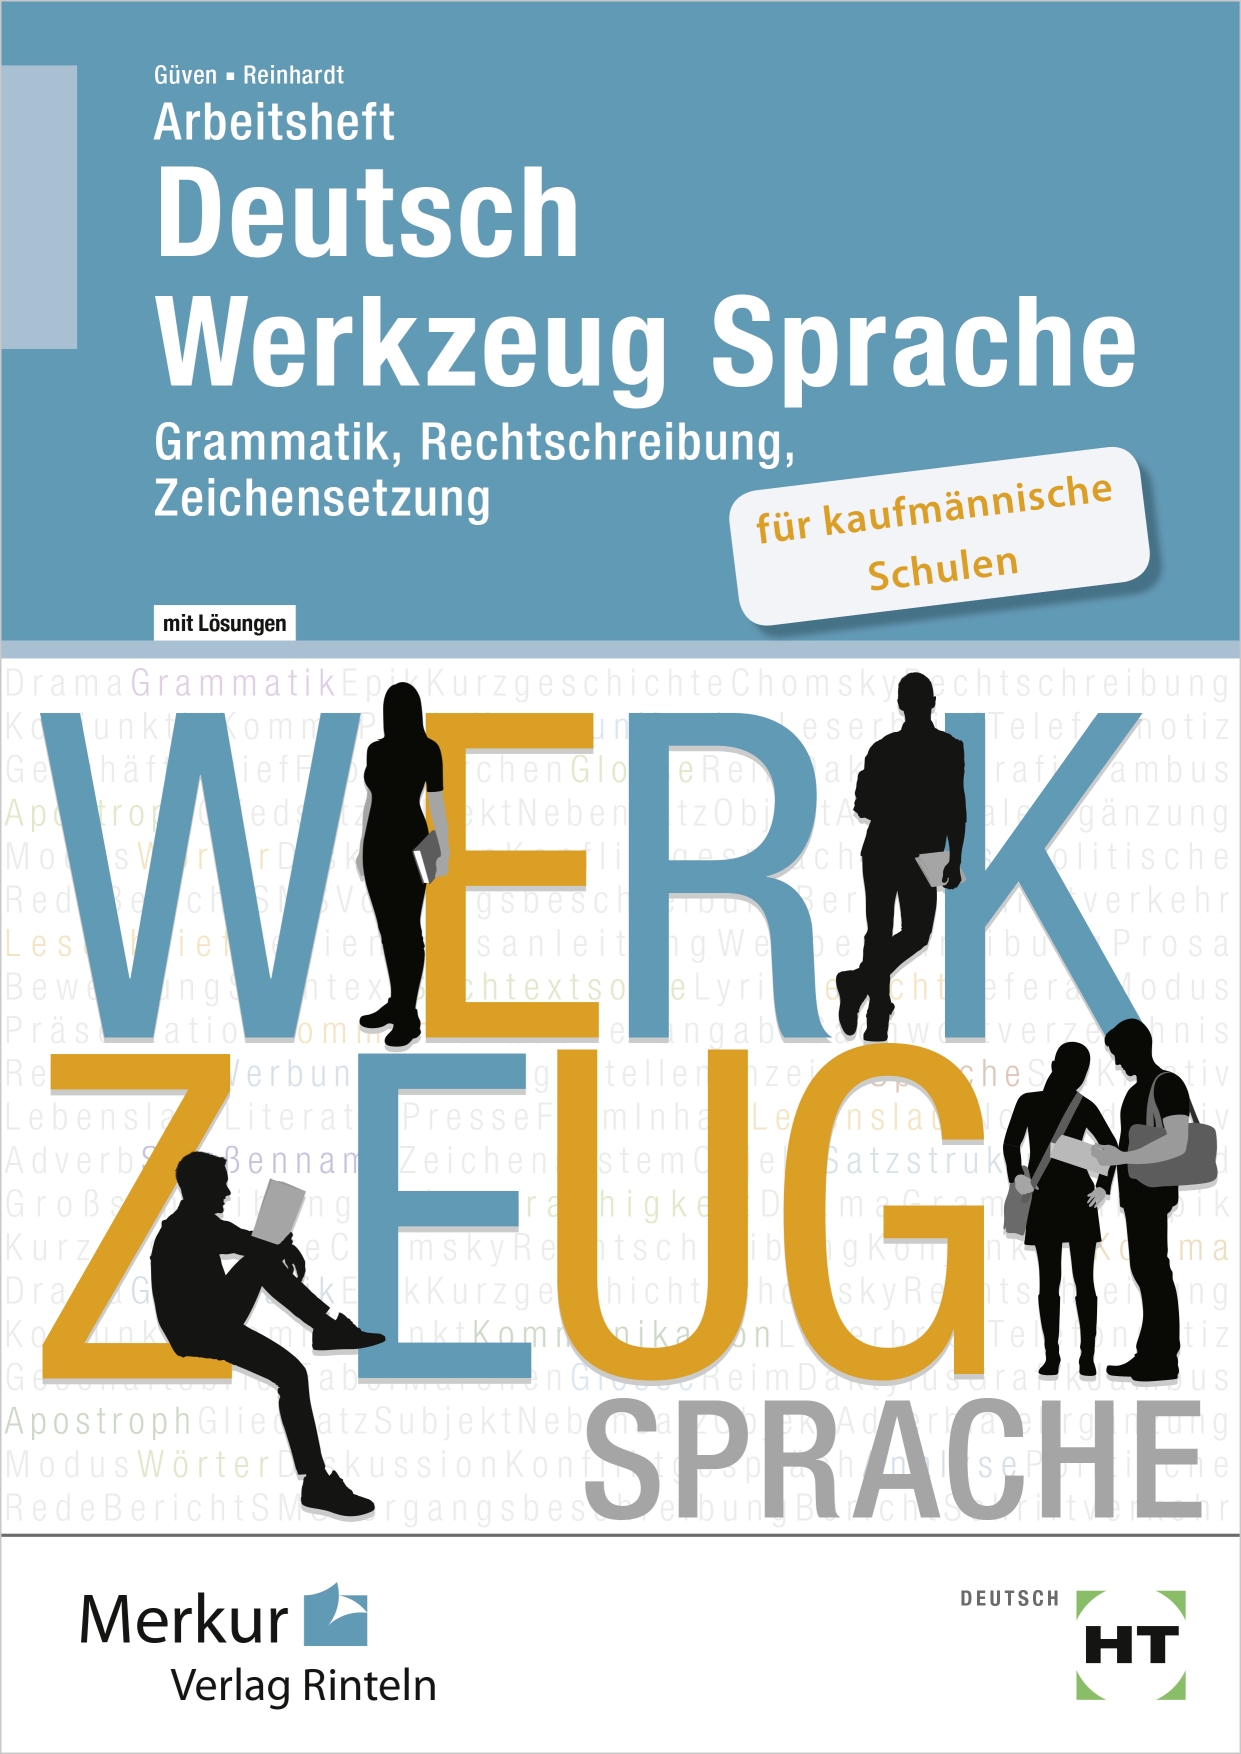 Arbeitsheft Deutsch - Werkzeug Sprache für kaufmännische Schulen Grammatik, Rechtschreibung, Zeichensetzung Lösungen